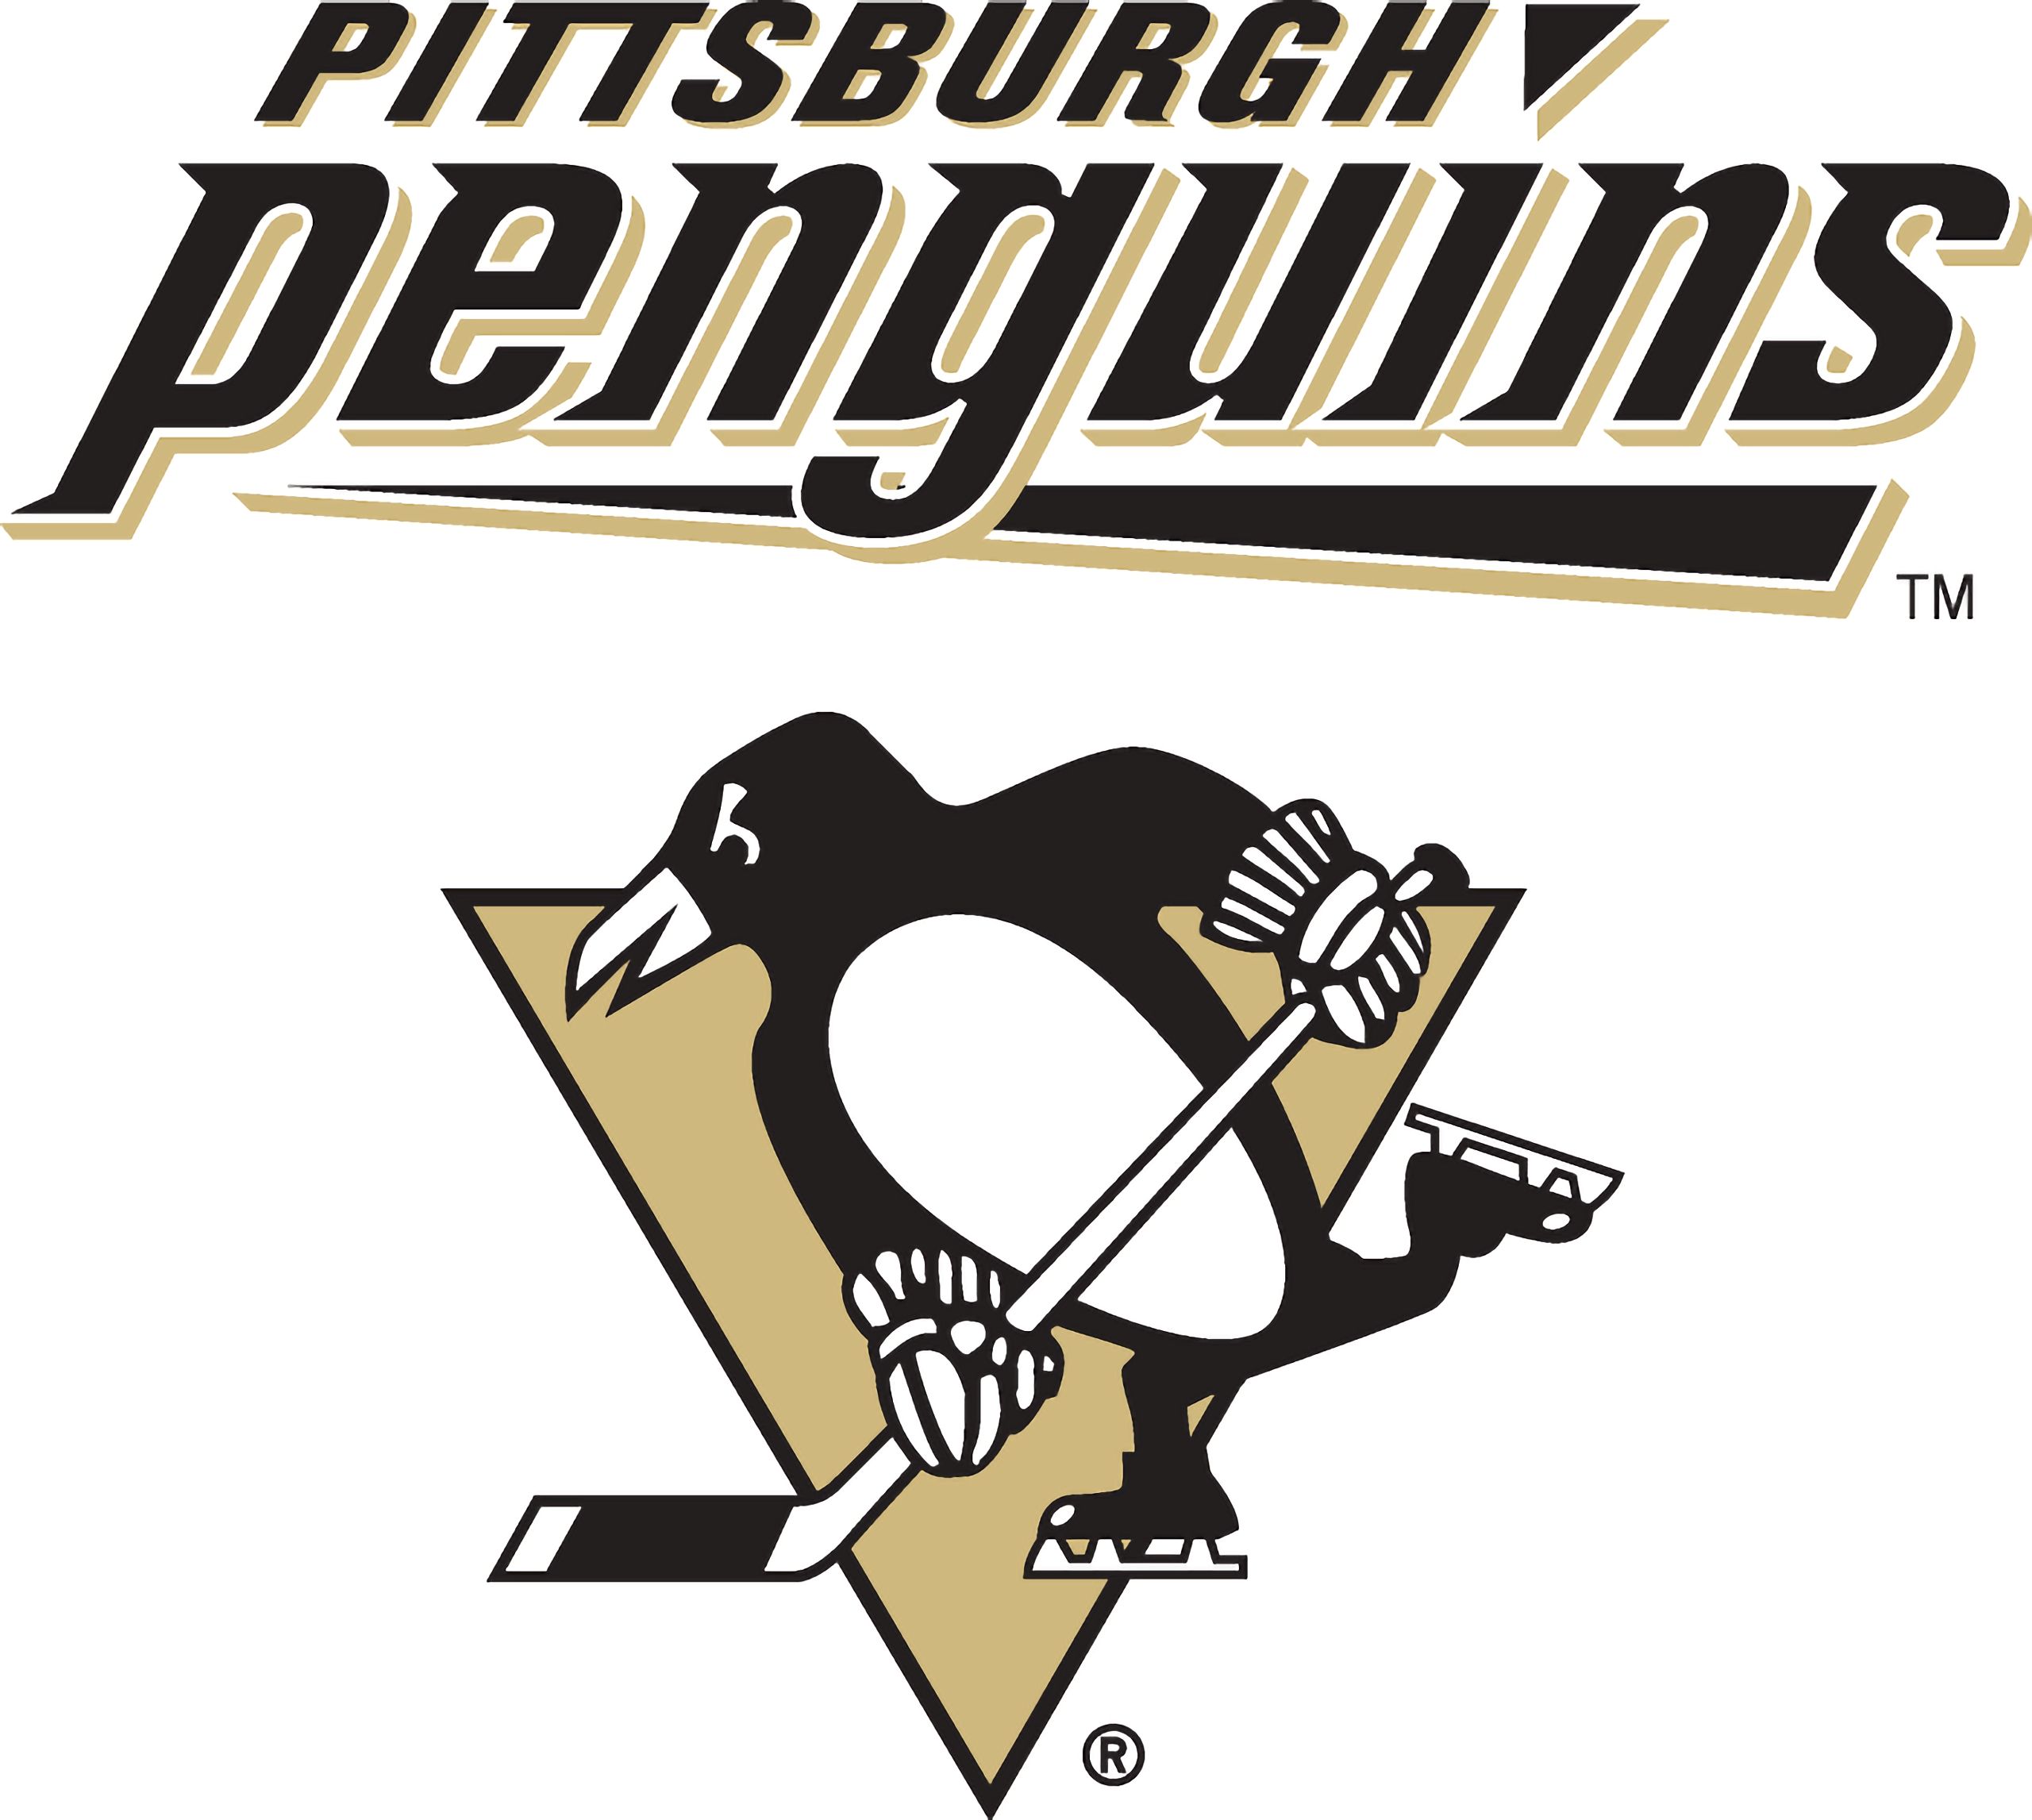 Хк питтсбург. Хк Питтсбург Пингвинз. Хк Питтсбург Пингвинз логотип. Логотип Питтсбург Пингвинз НХЛ. Логотипы хоккейных команд НХЛ Питтсбург.